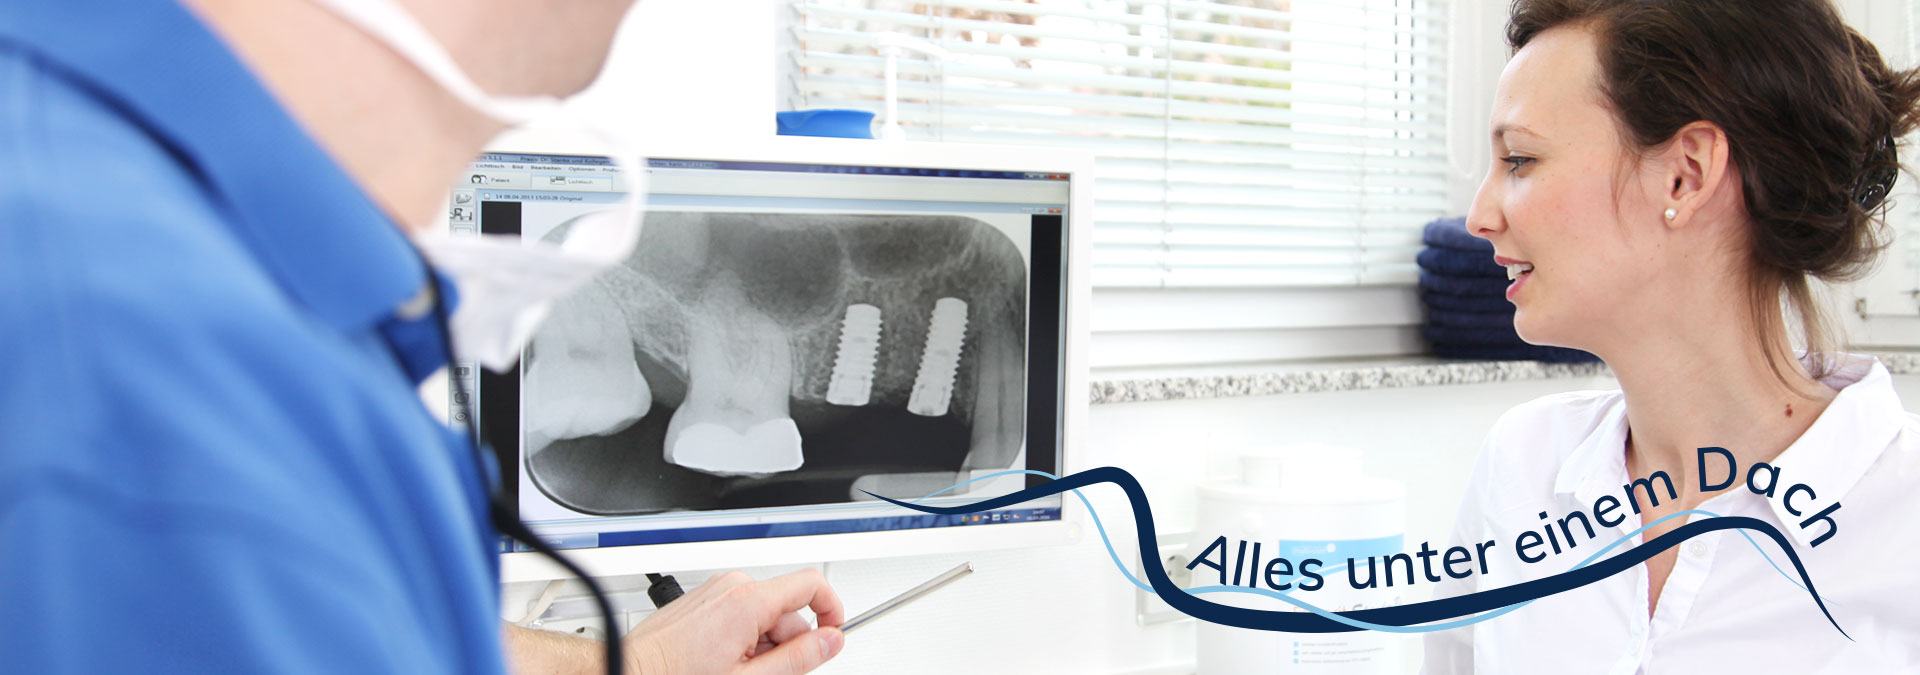 Implantologie - Dr. Stanke & Kollegen - Ihre Zahnarztpraxis mit eigenem Dentallabor in Hamm.